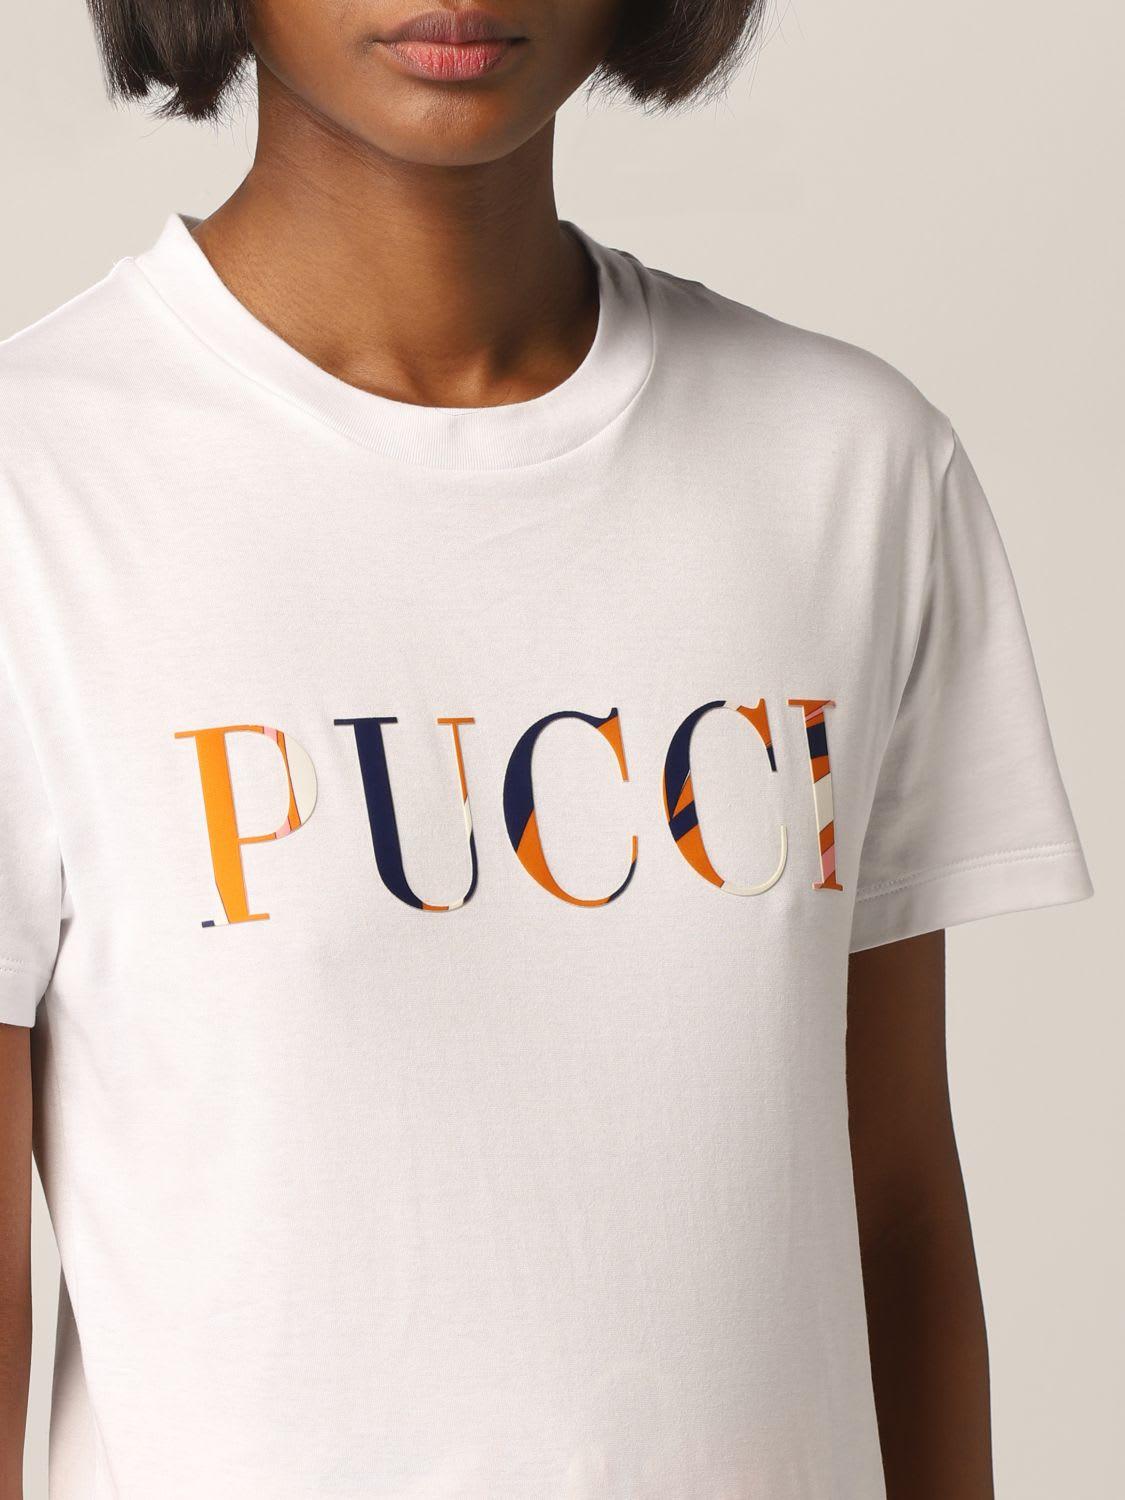 Emilio Pucci Women's White T-shirt T-shirt